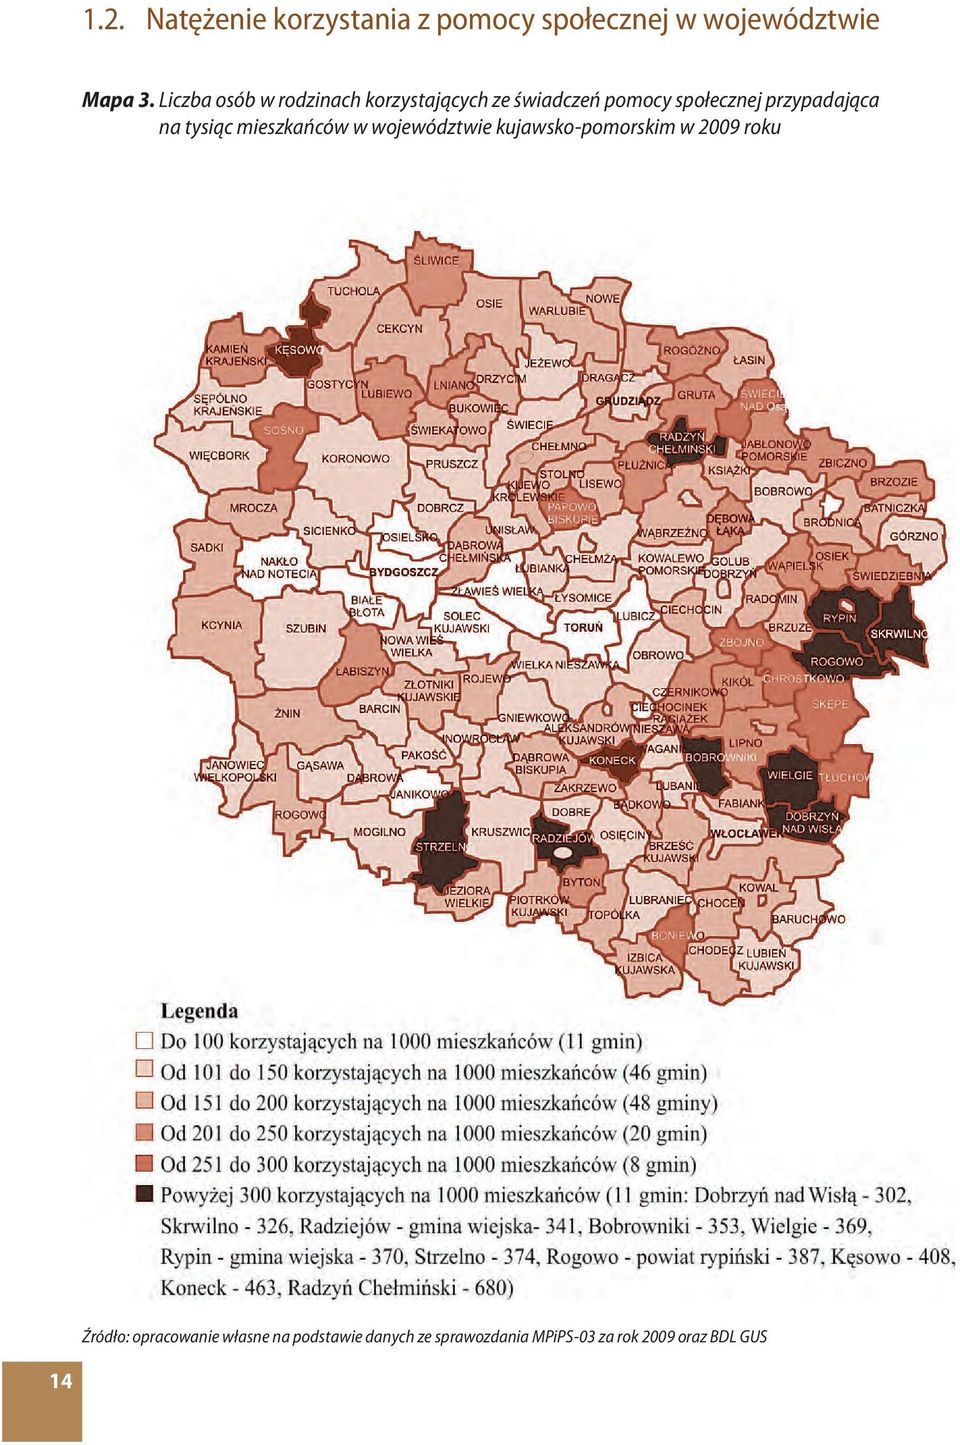 przypadająca na tysiąc mieszkańców w województwie kujawsko-pomorskim w 2009